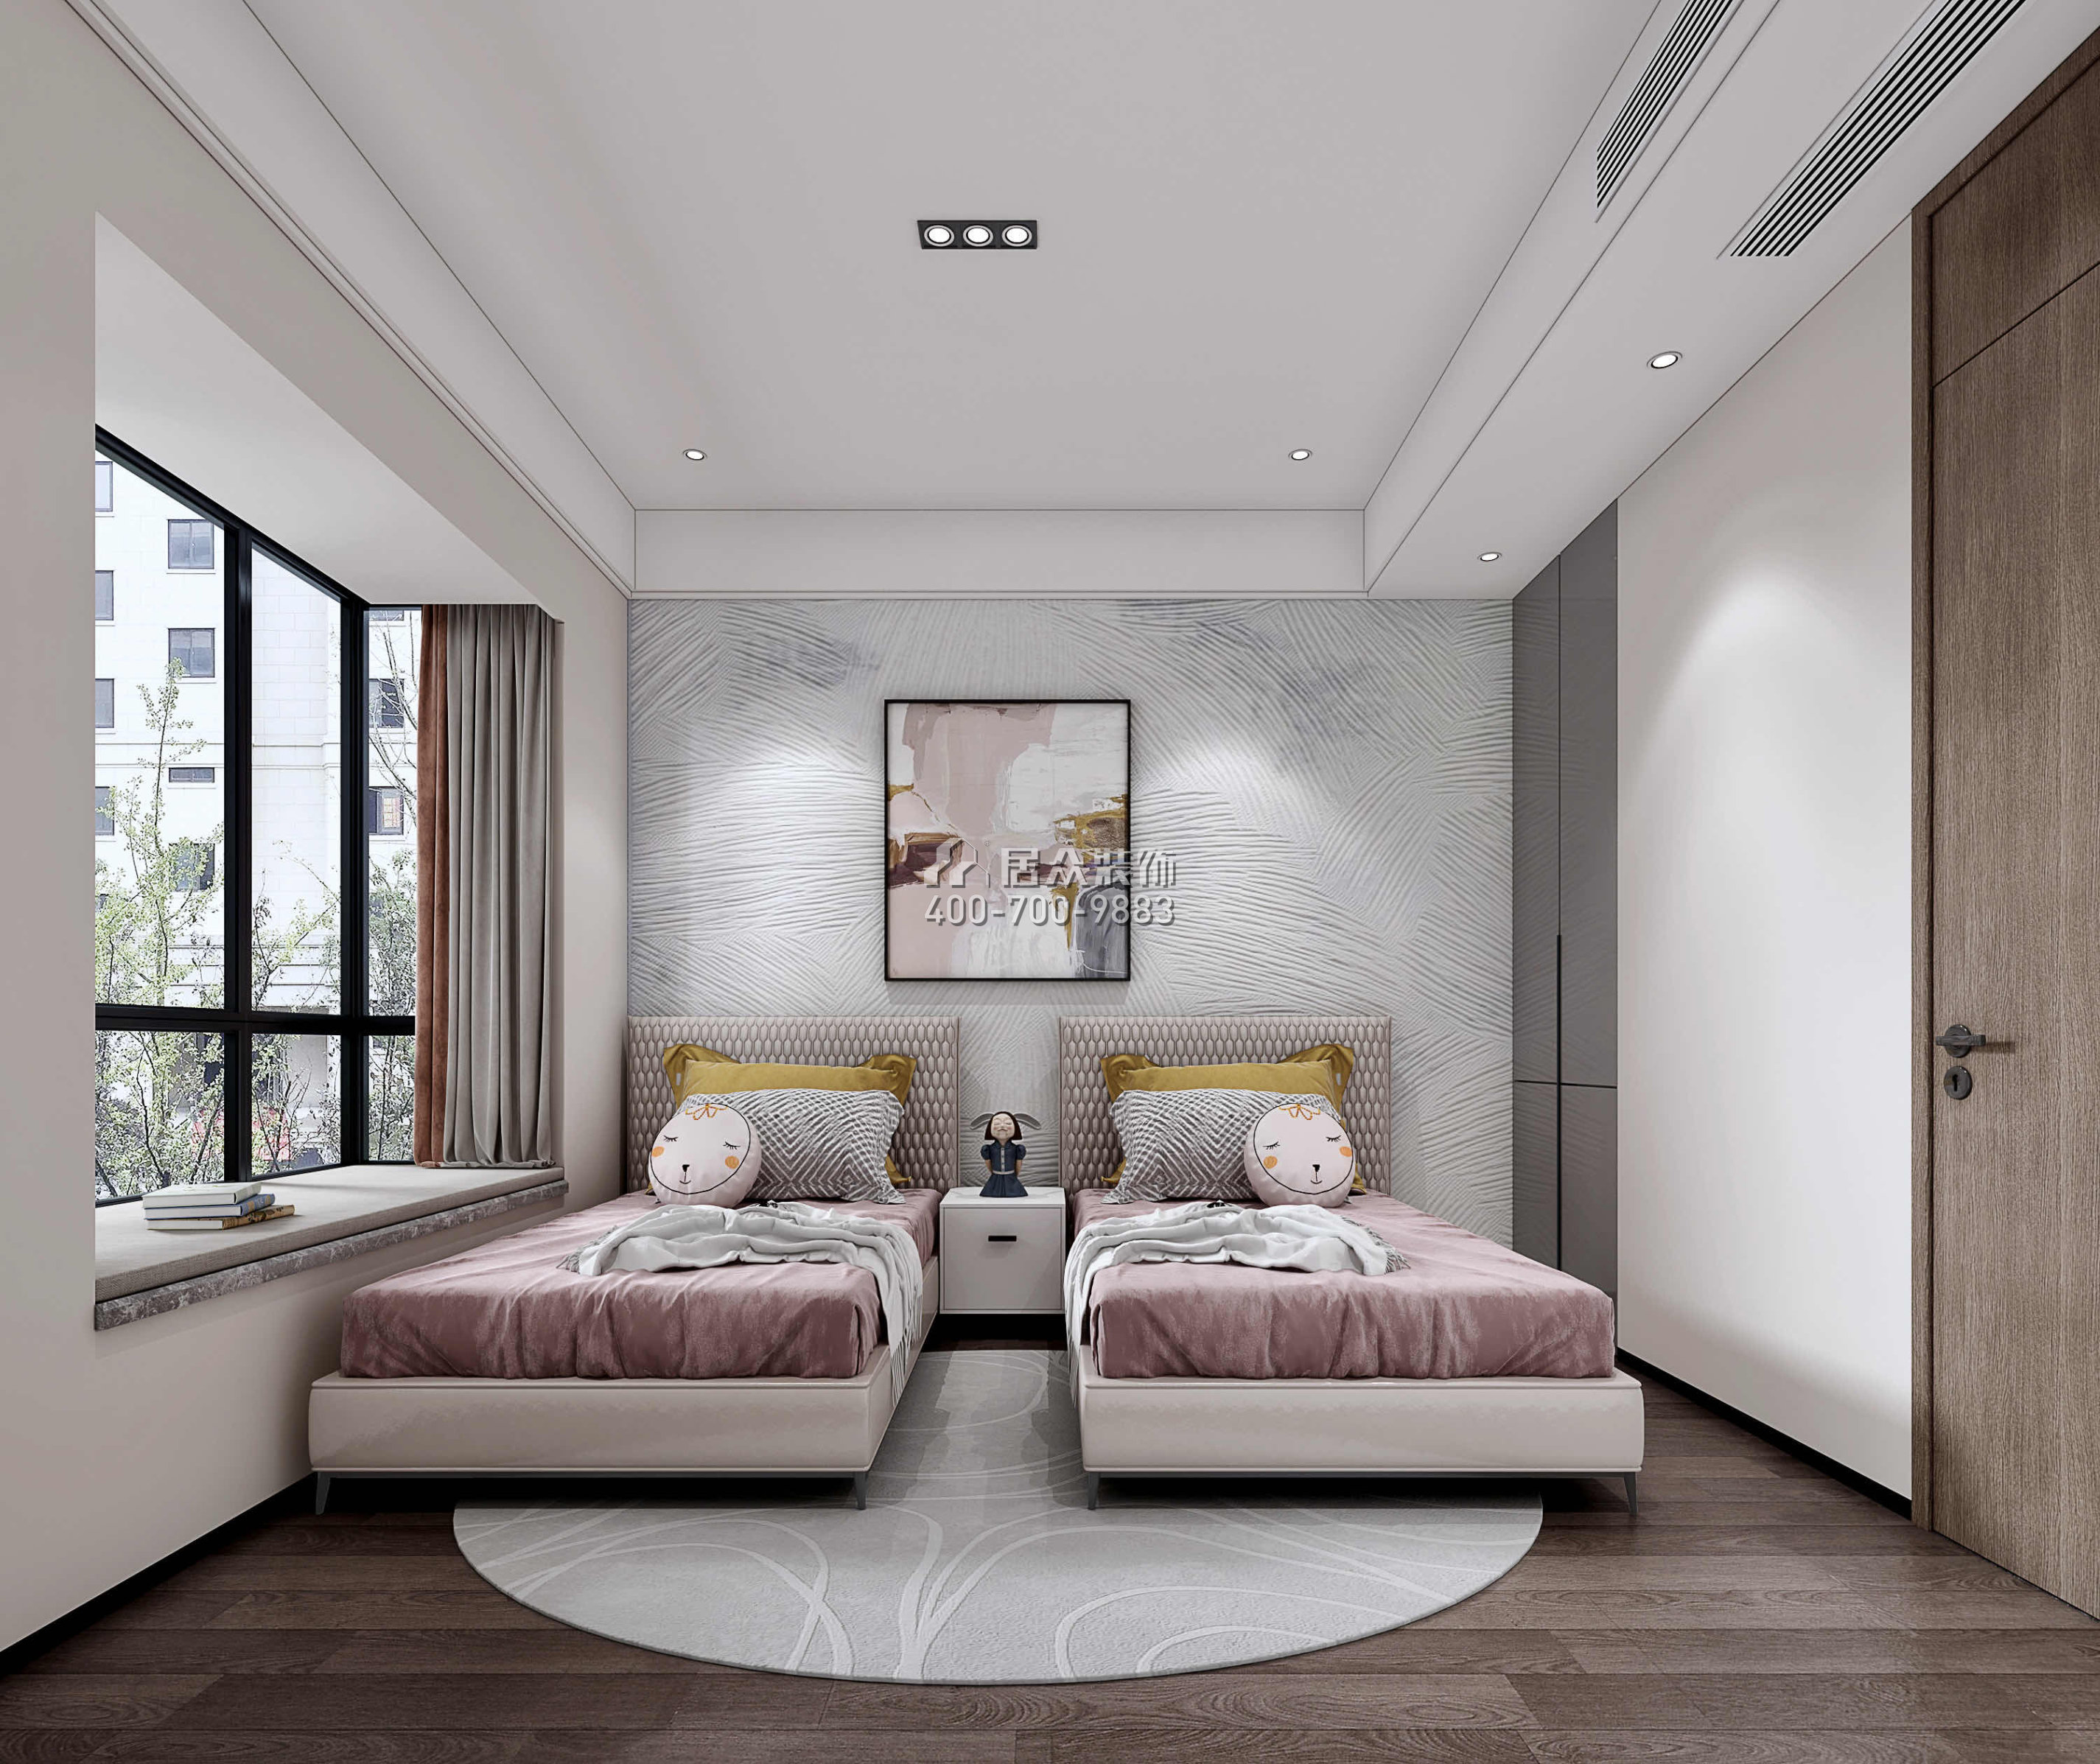 南海玫瑰园三期180平方米现代简约风格平层户型卧室装修效果图